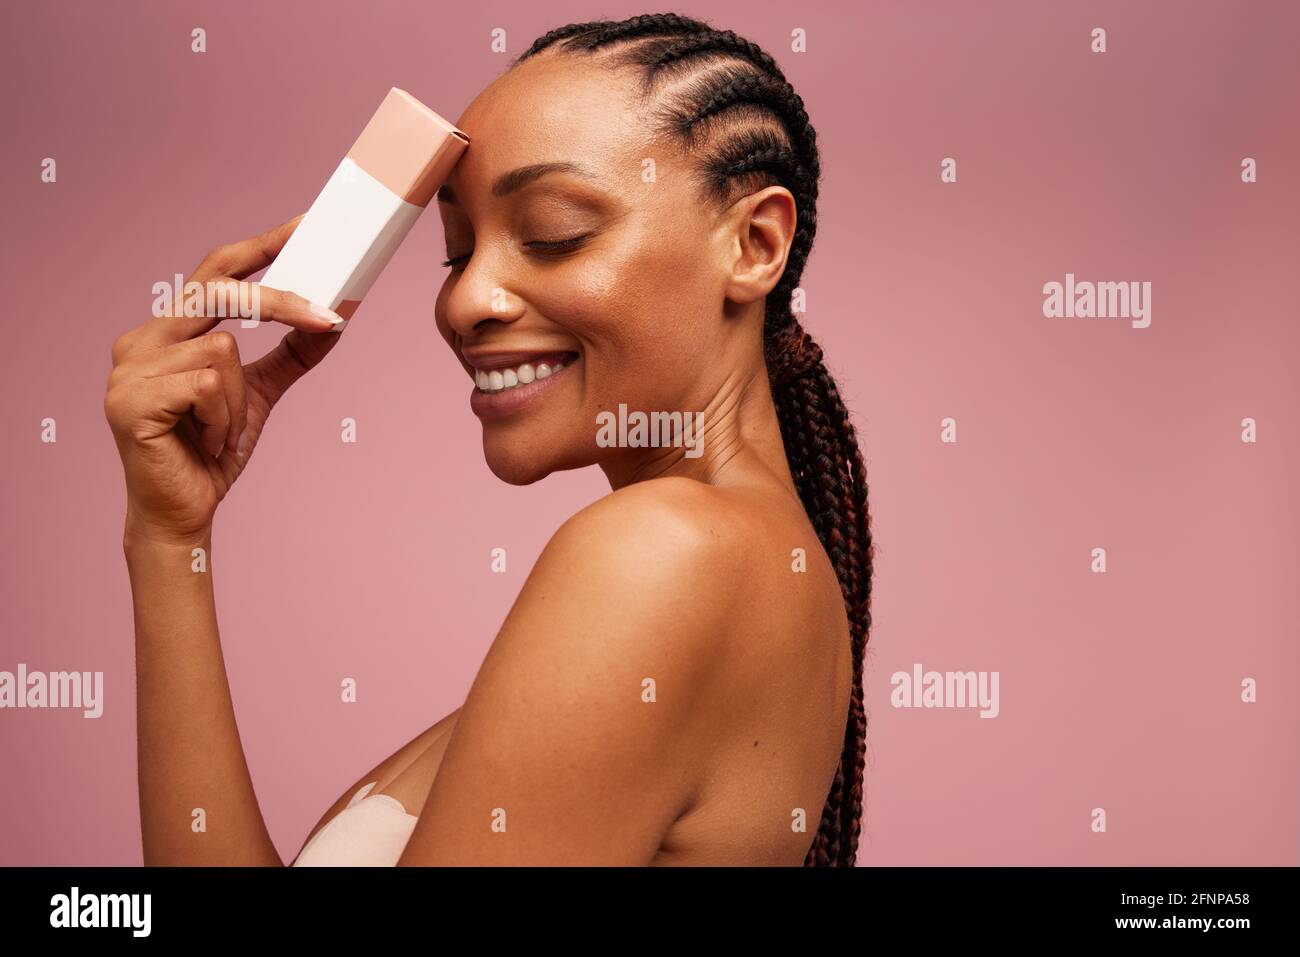 Hübsches Weibchen mit Beauty-Produkt. Frau lächelt mit geschlossenen Augen und hält ein kosmetisches Produkt. Stockfoto